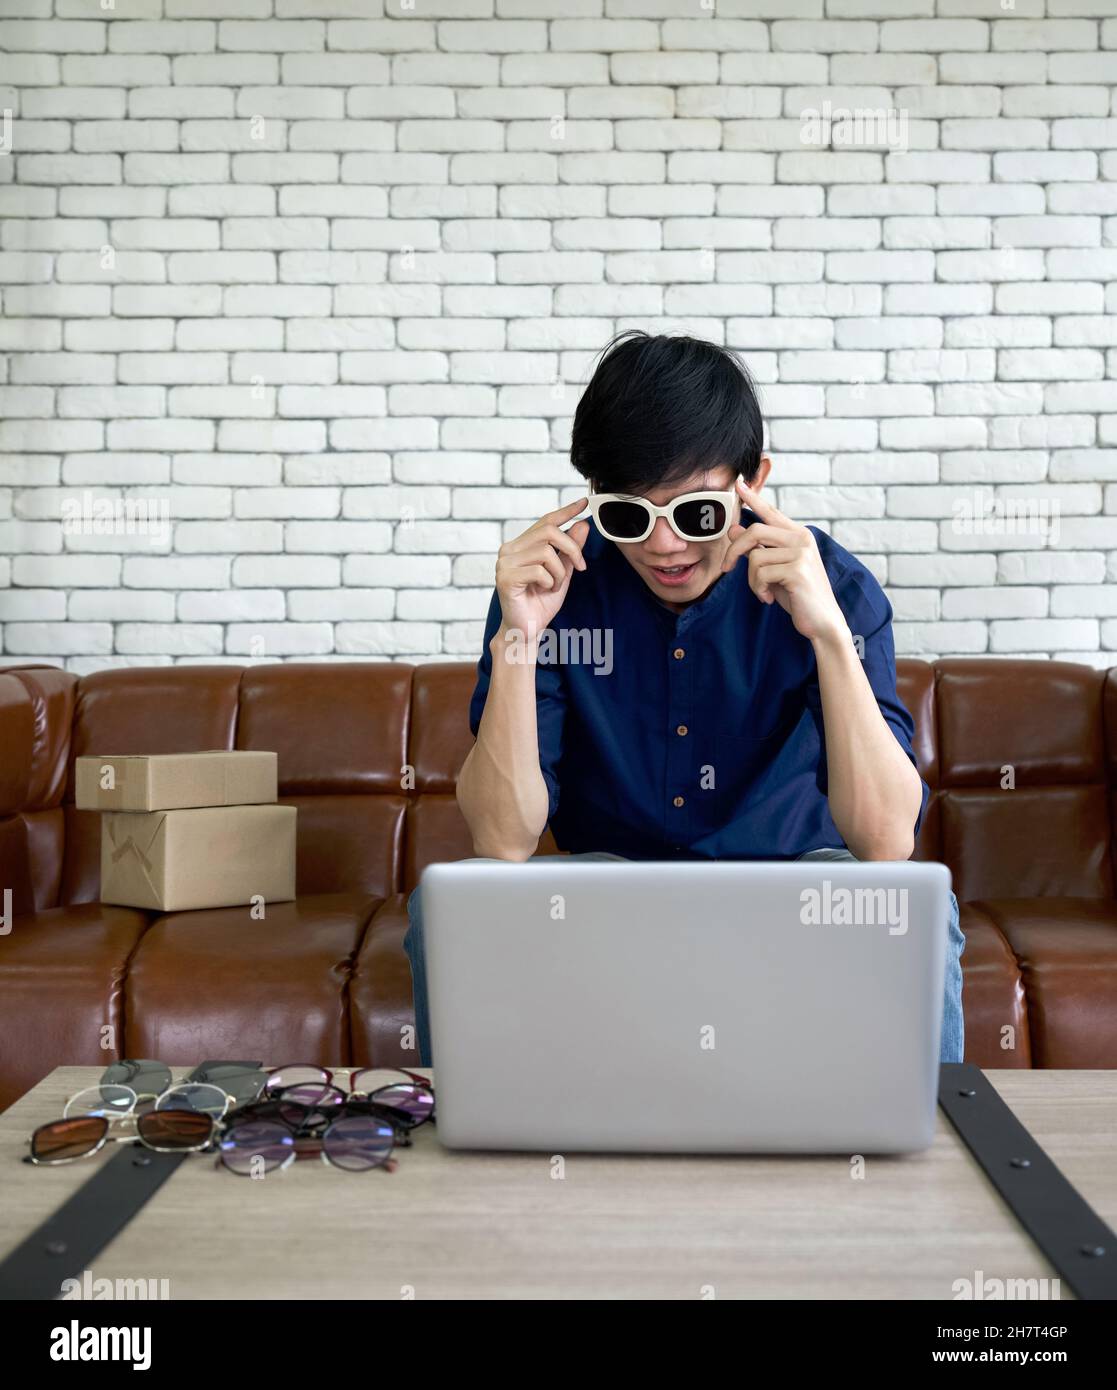 Jeune homme portant des lunettes de soleil faisant face à l'écran de  l'ordinateur.Homme asiatique vendre différents styles de lunettes en ligne  via l'application sur ordinateur portable Photo Stock - Alamy